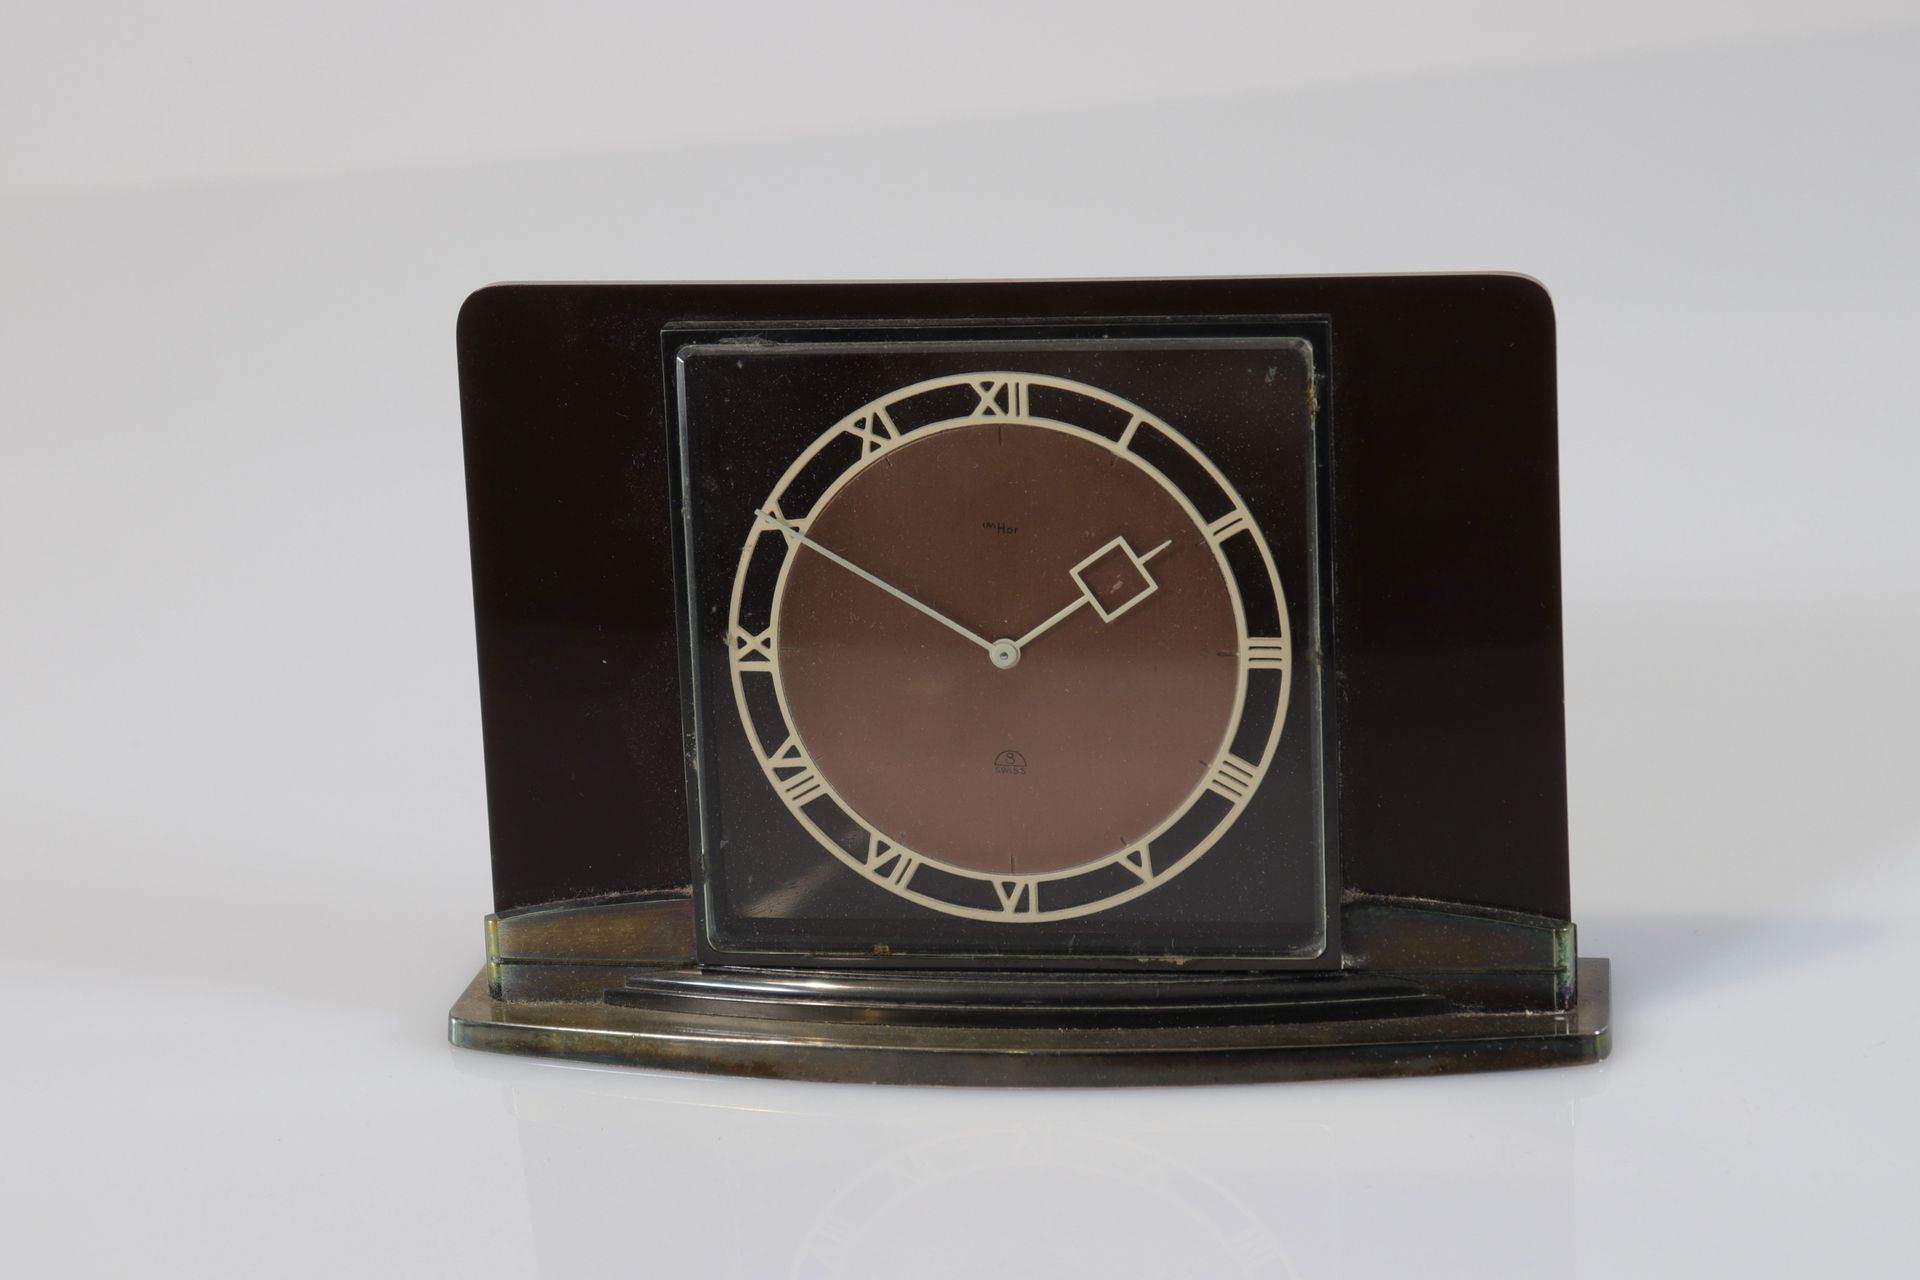 Suisse - Horloge Imhoff - 1930 Schweiz - Uhr Imhoff - 1930
Epoche: Xxième 
Abmes&hellip;